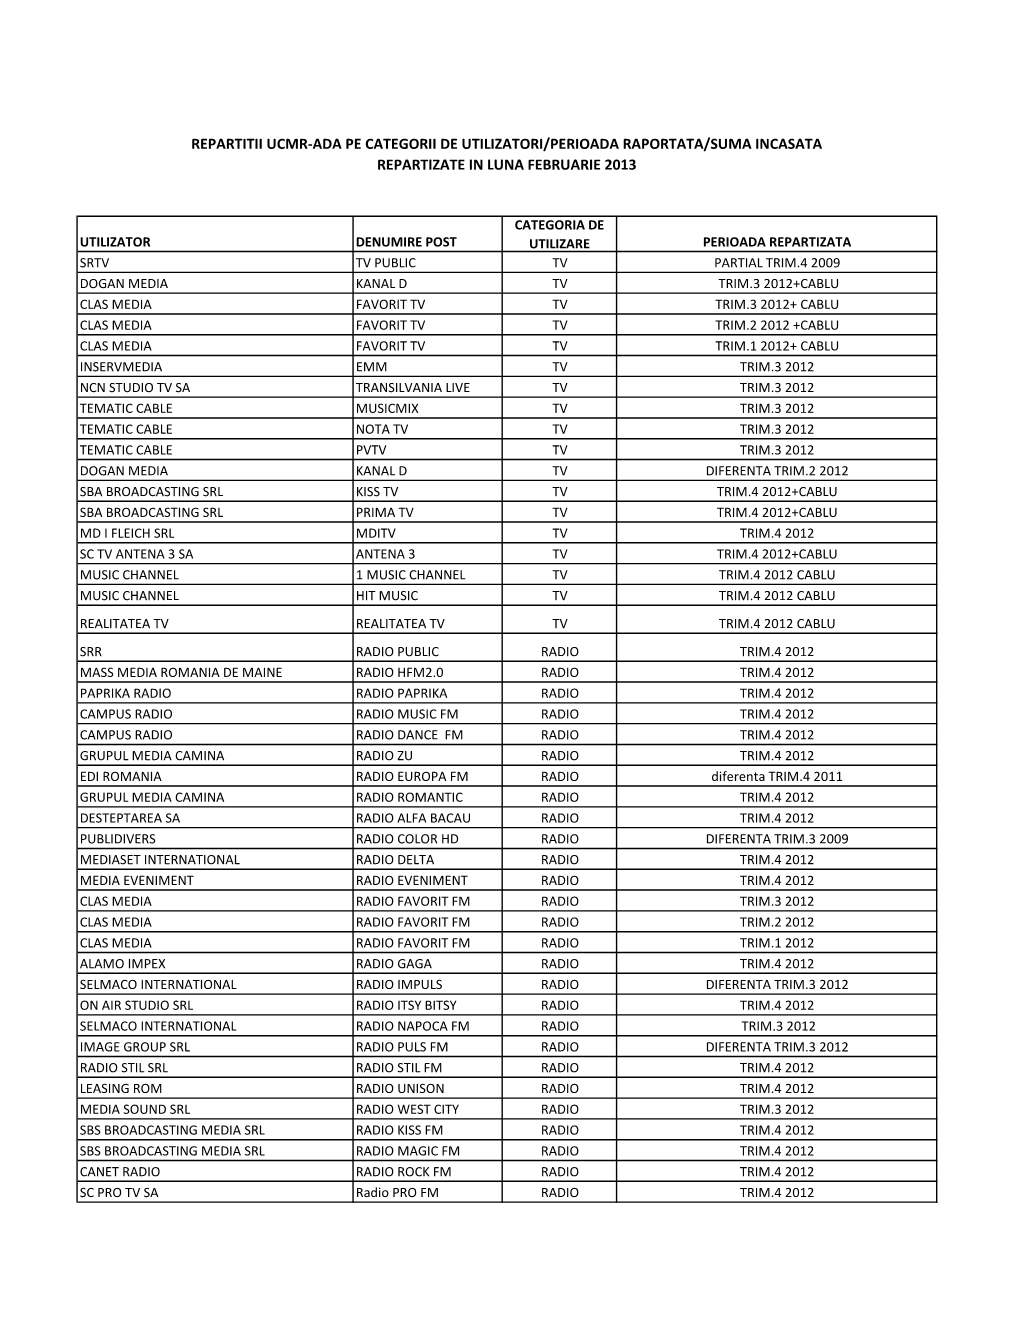 Repartitii Ucmr-Ada Pe Categorii De Utilizatori/Perioada Raportata/Suma Incasata Repartizate in Luna Februarie 2013